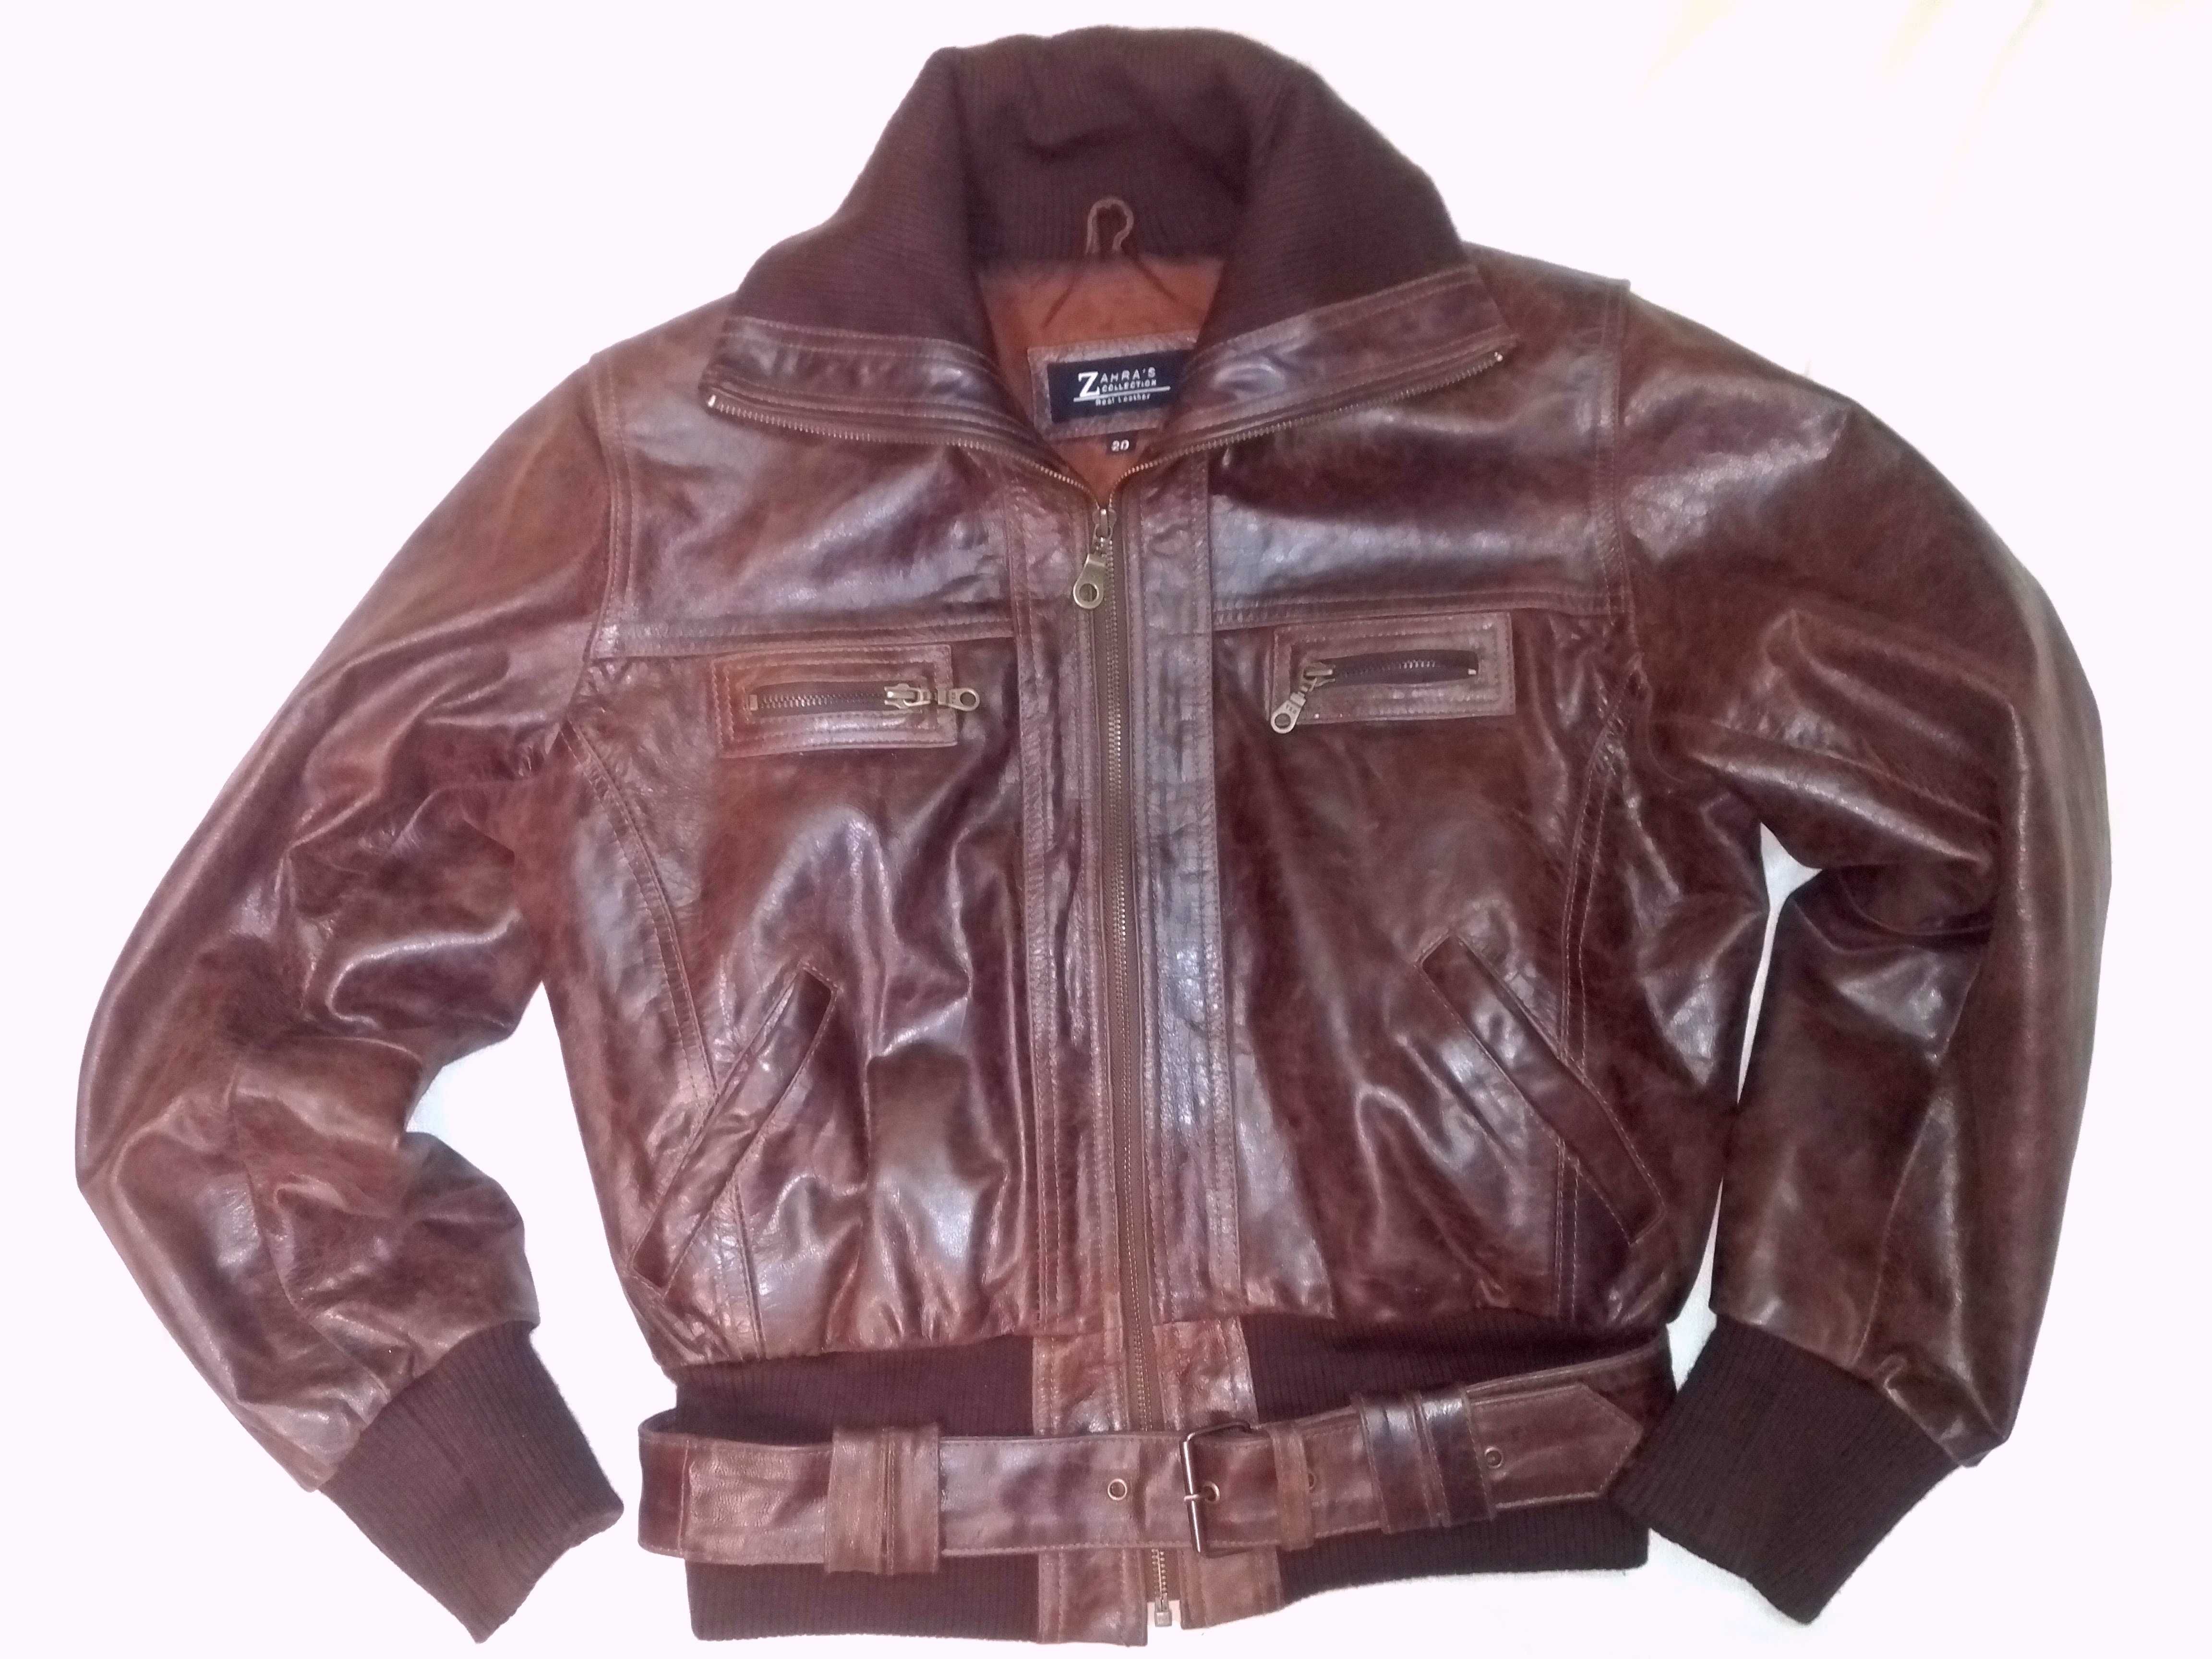 Куртка бомбер Zahra's кожаная винтаж эксклюзивный пошив 48-50 размер